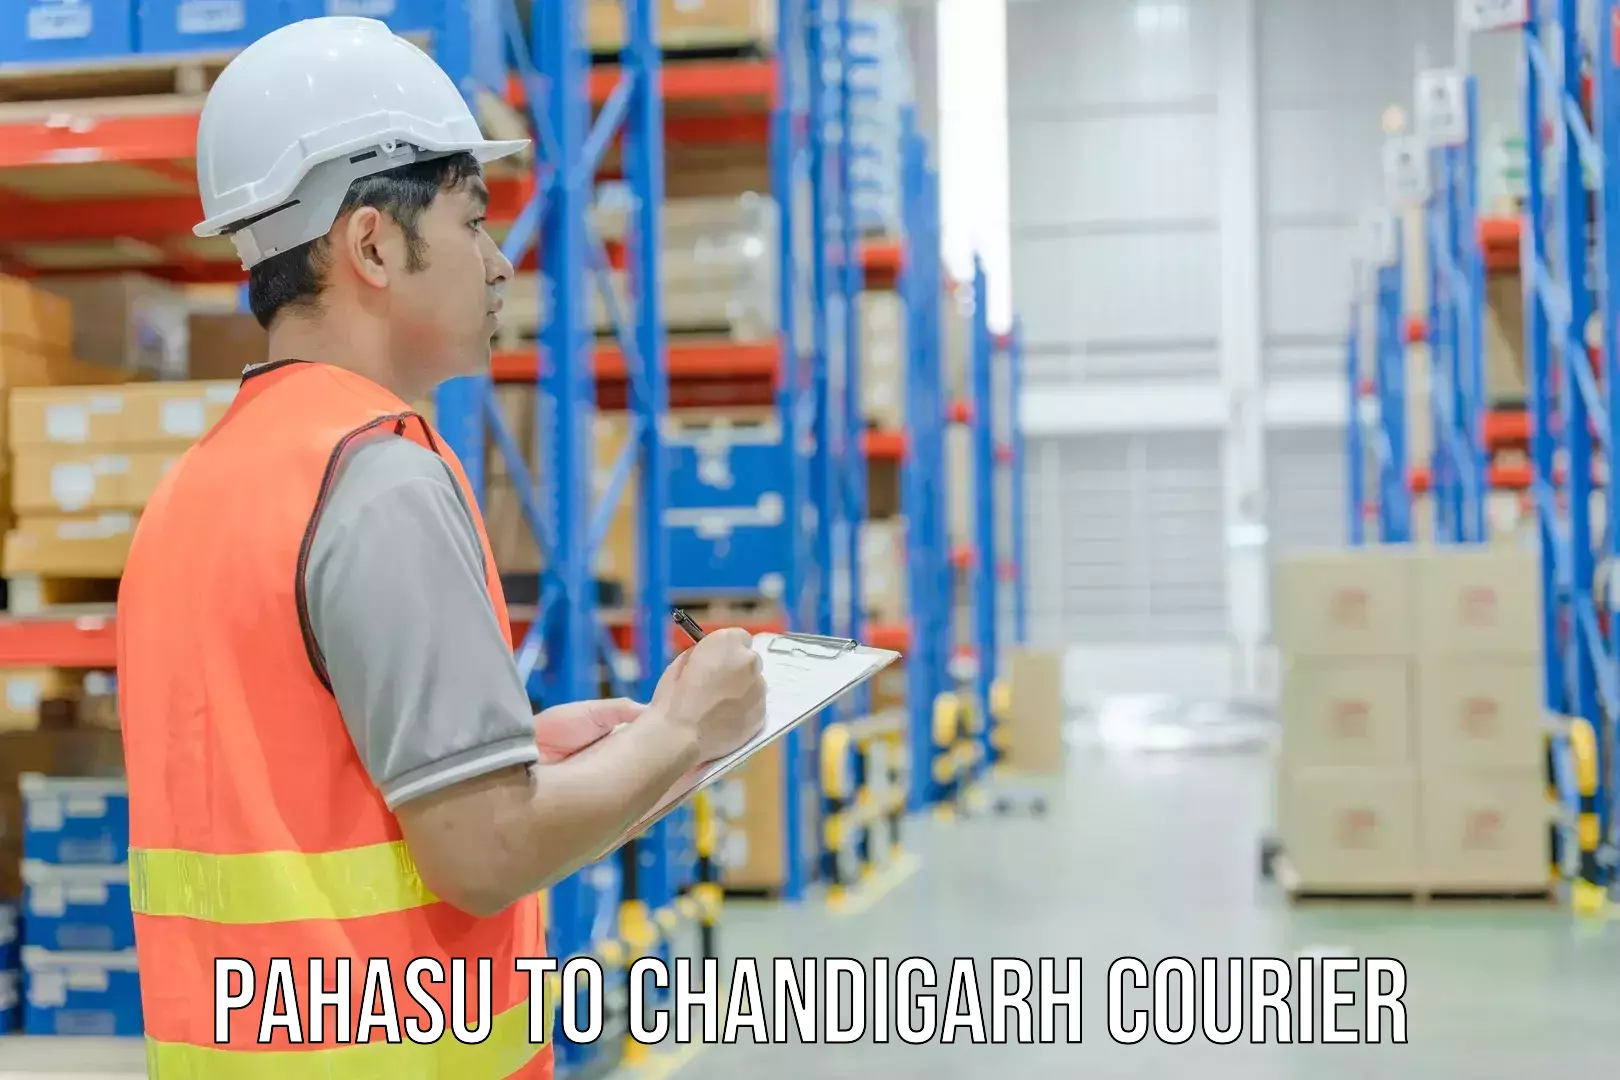 International courier rates Pahasu to Chandigarh